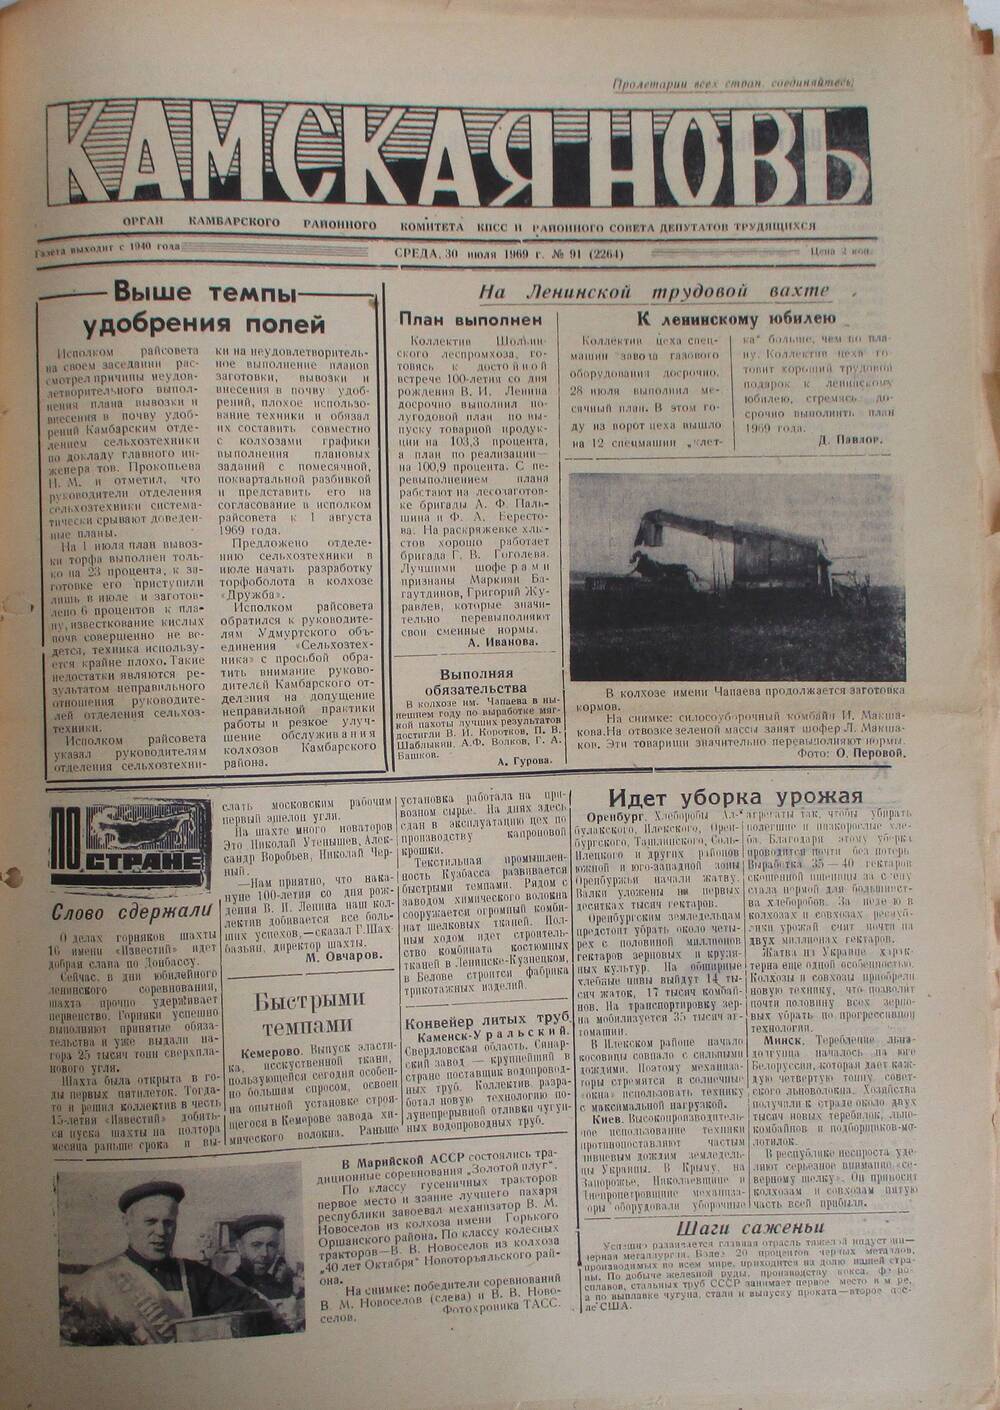 Газеты Камская новь за 1969 год, орган Камбарского райсовета и  РККПСС, с №1 по №66, с №68 по №156. №91.